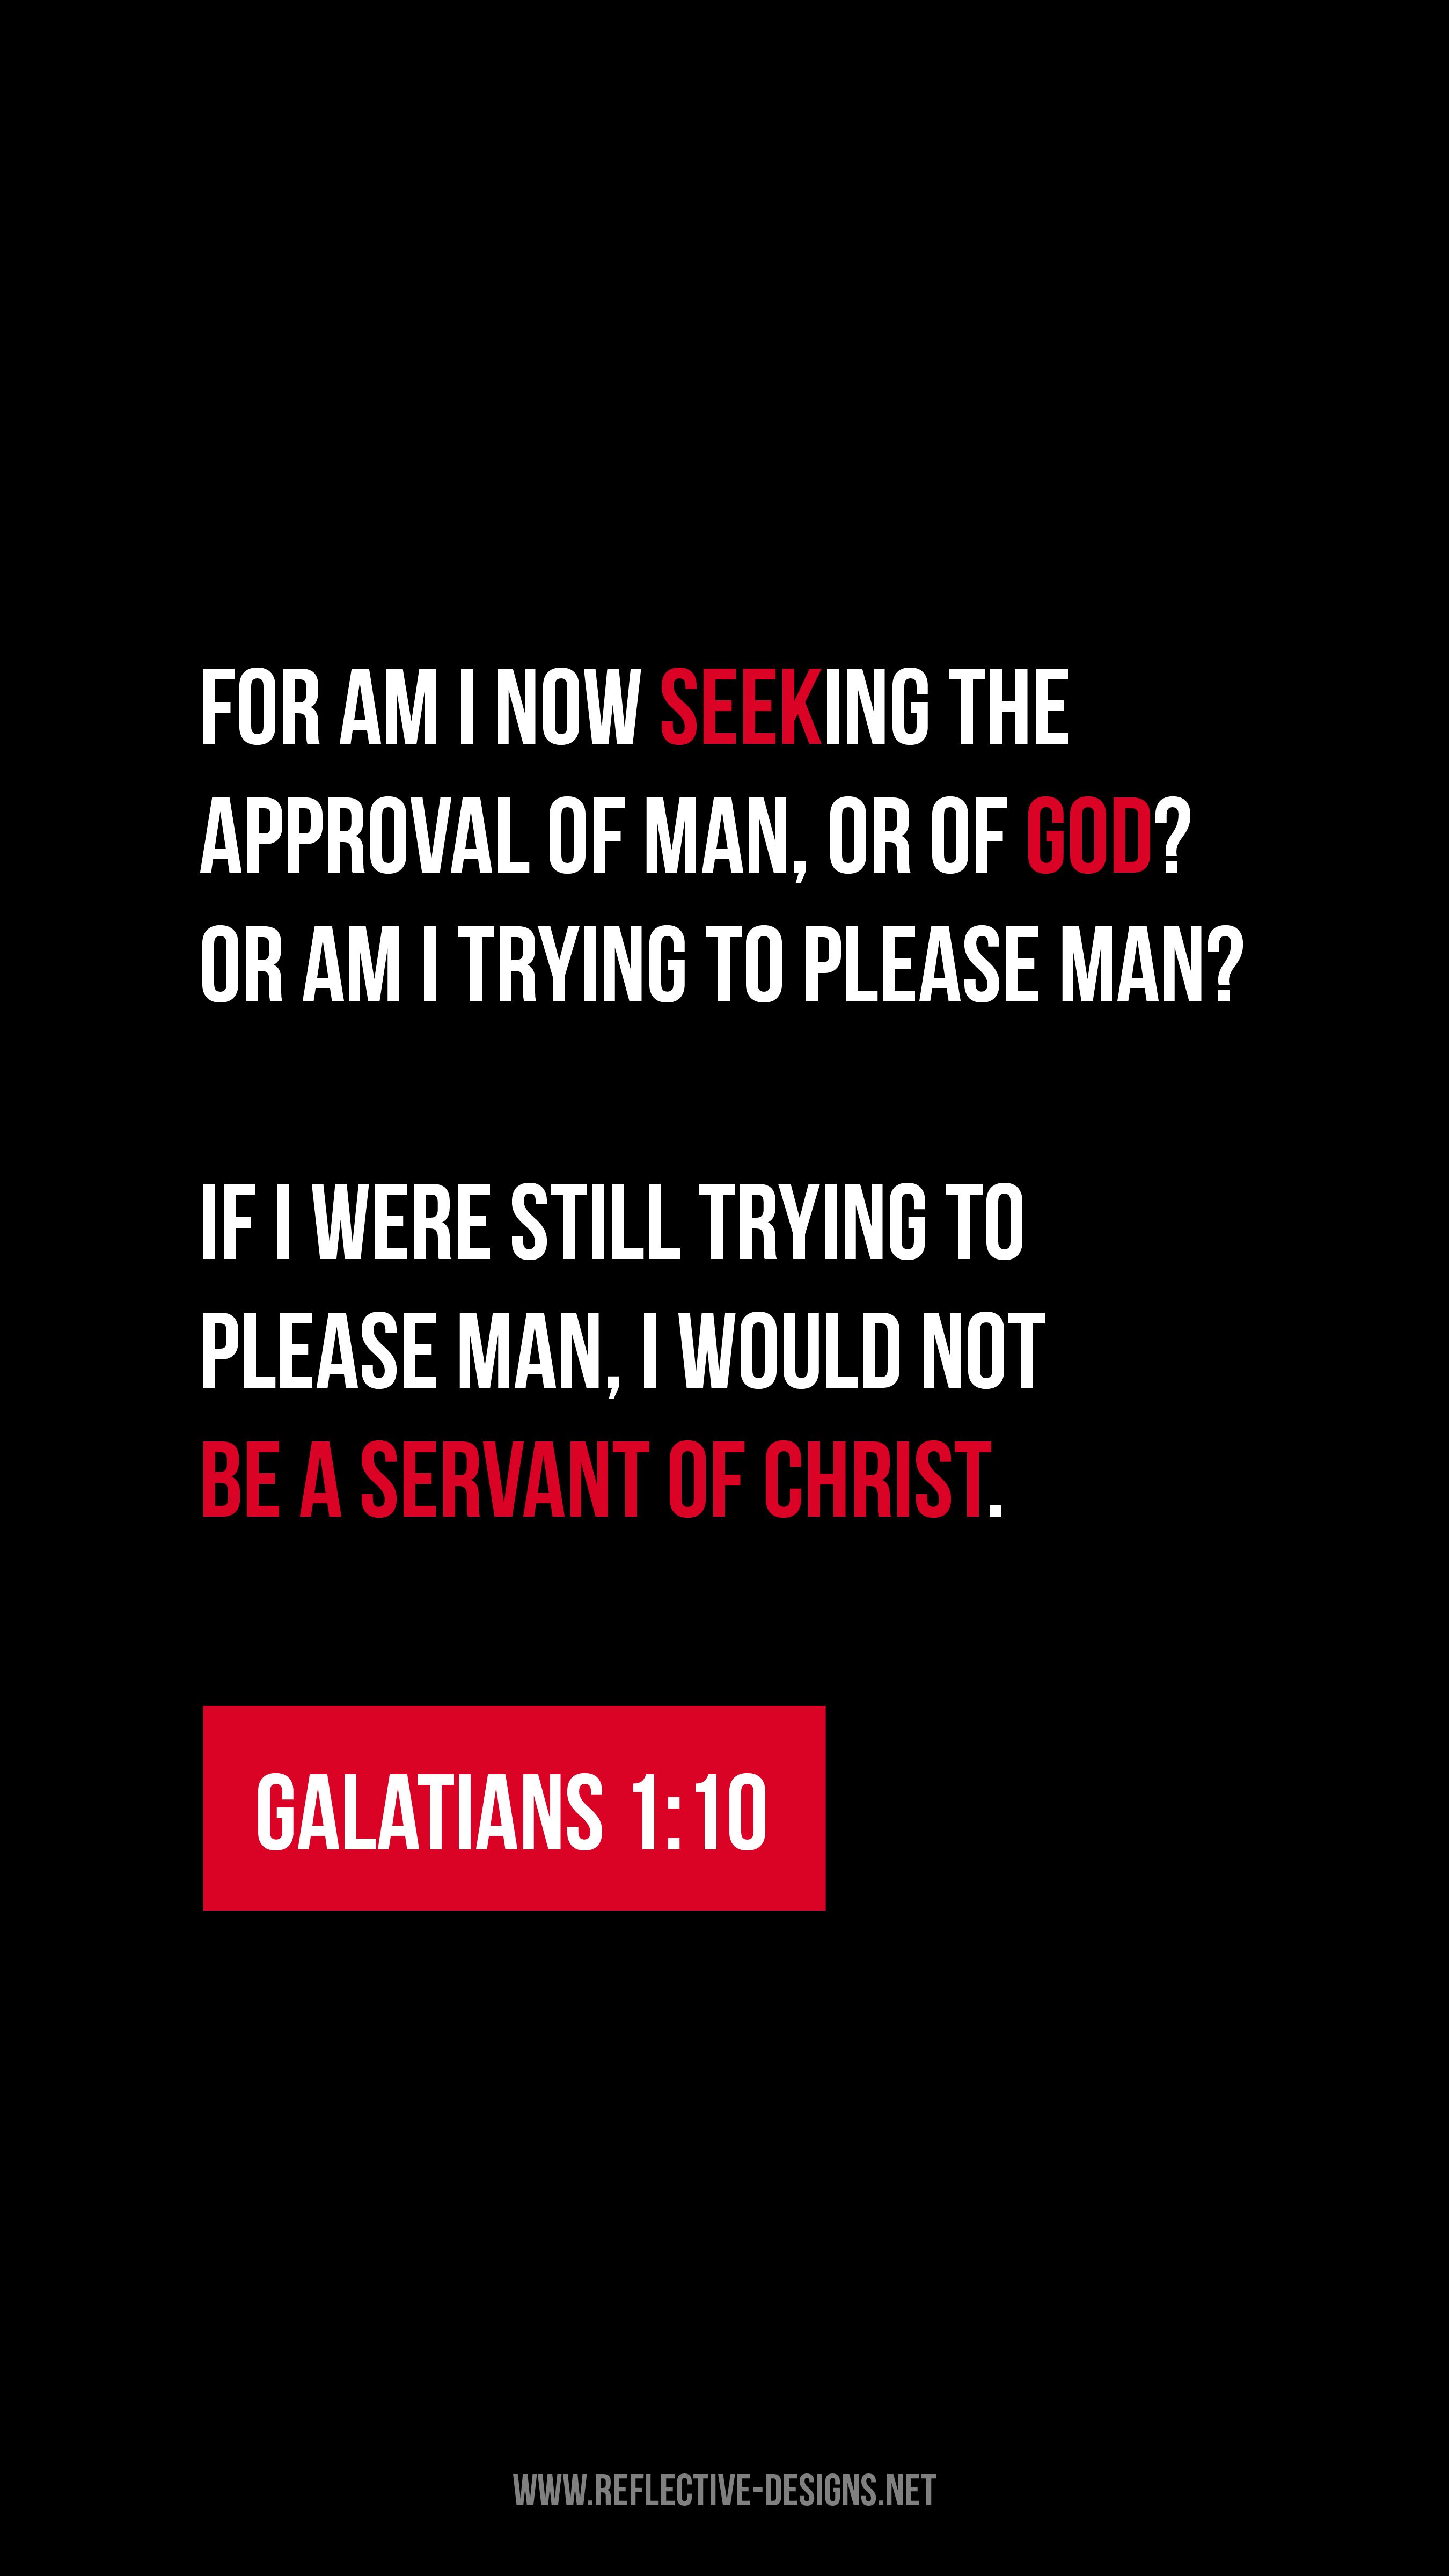 Galatians 1:10 iPhone Wallpaper. iPhone wallpaper quotes inspirational, Inspirational quotes, iPhone wallpaper quotes funny